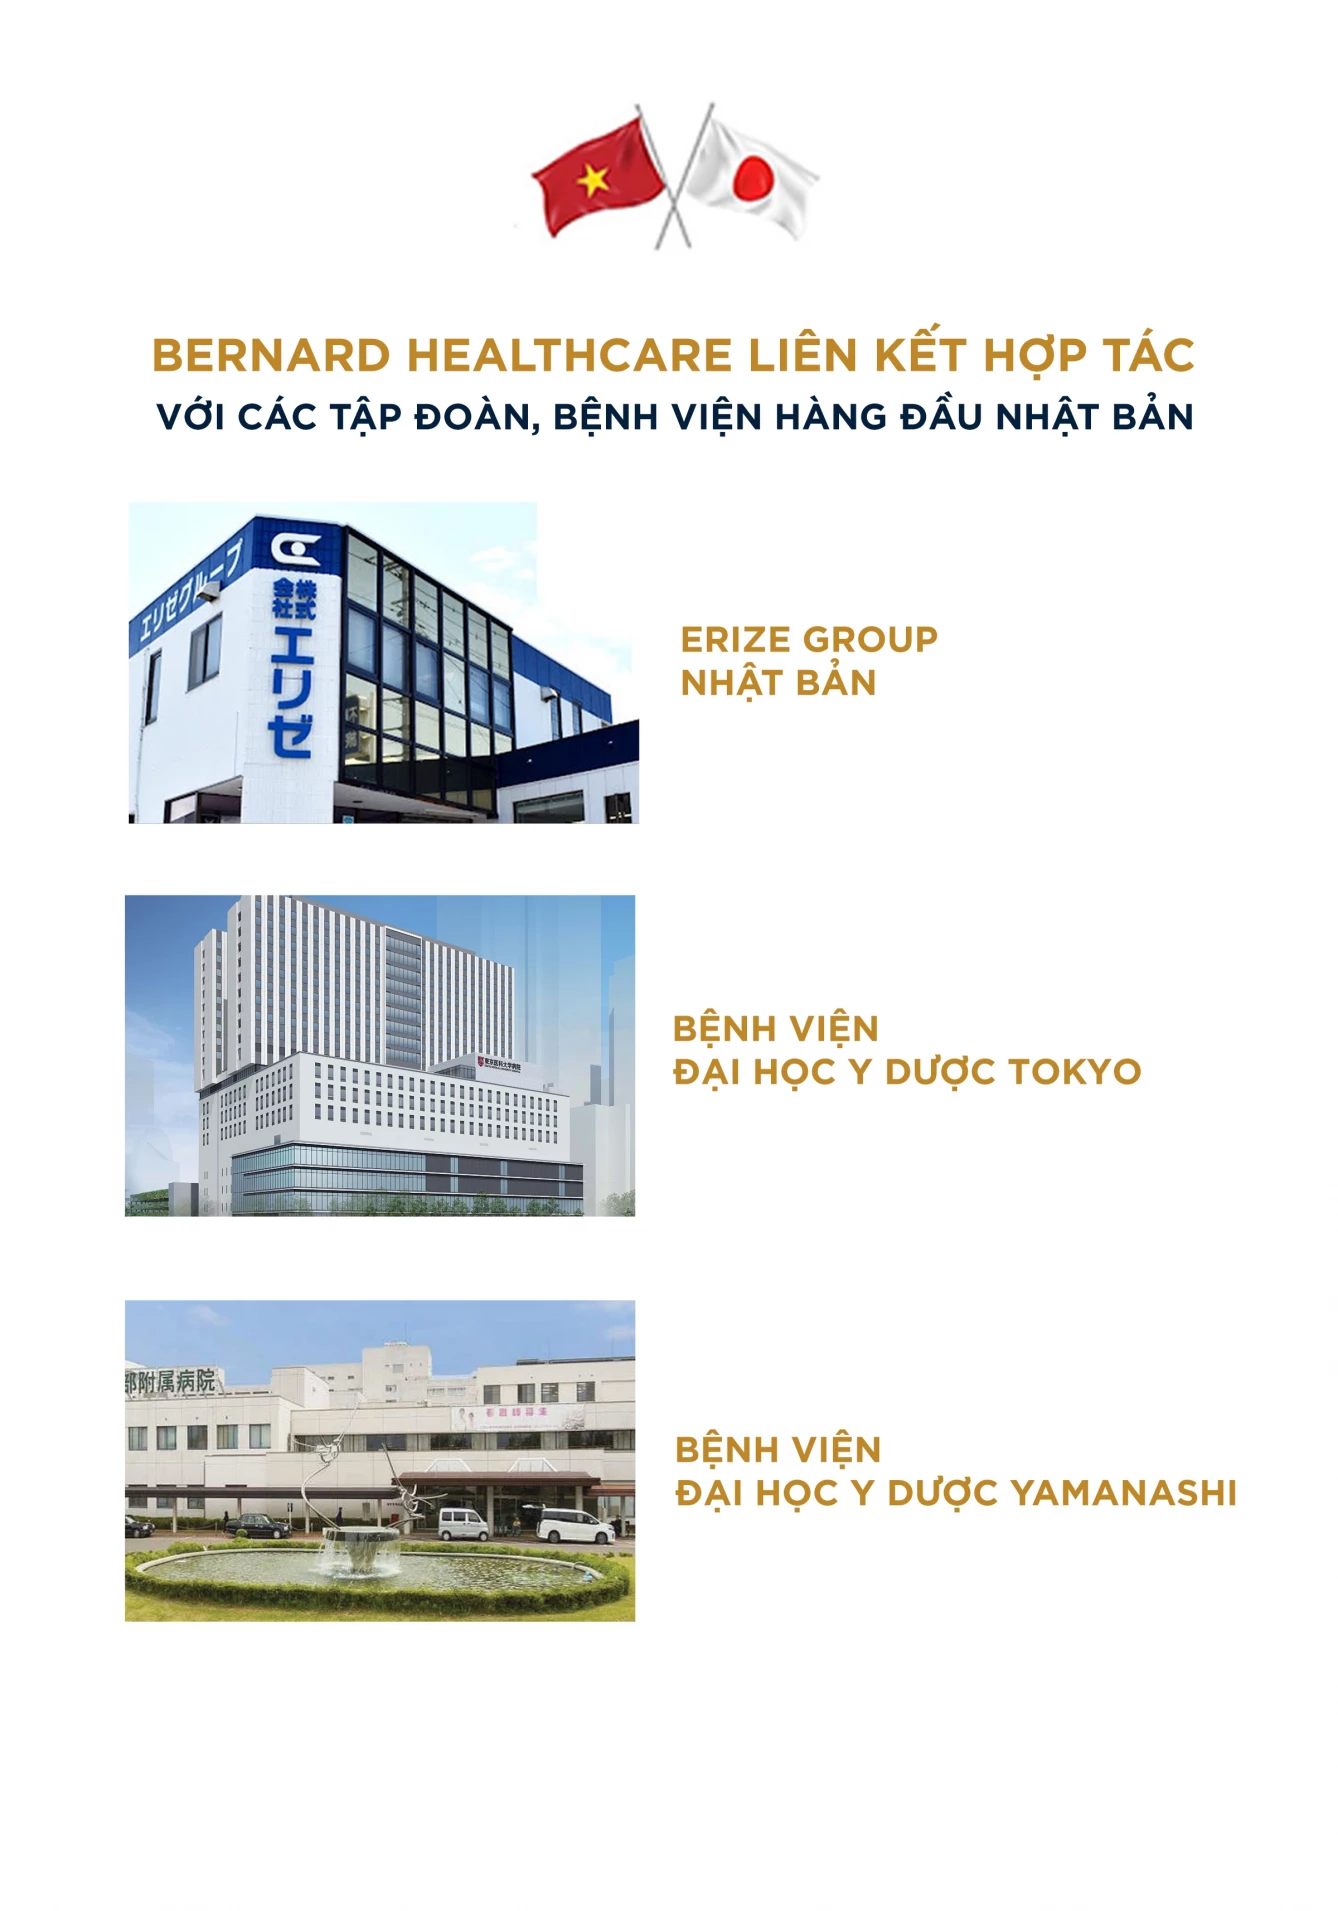 Bernard Healthcare hợp tác quốc tế, liên kết chiến lược với các bệnh viện hàng đầu Nhật Bản